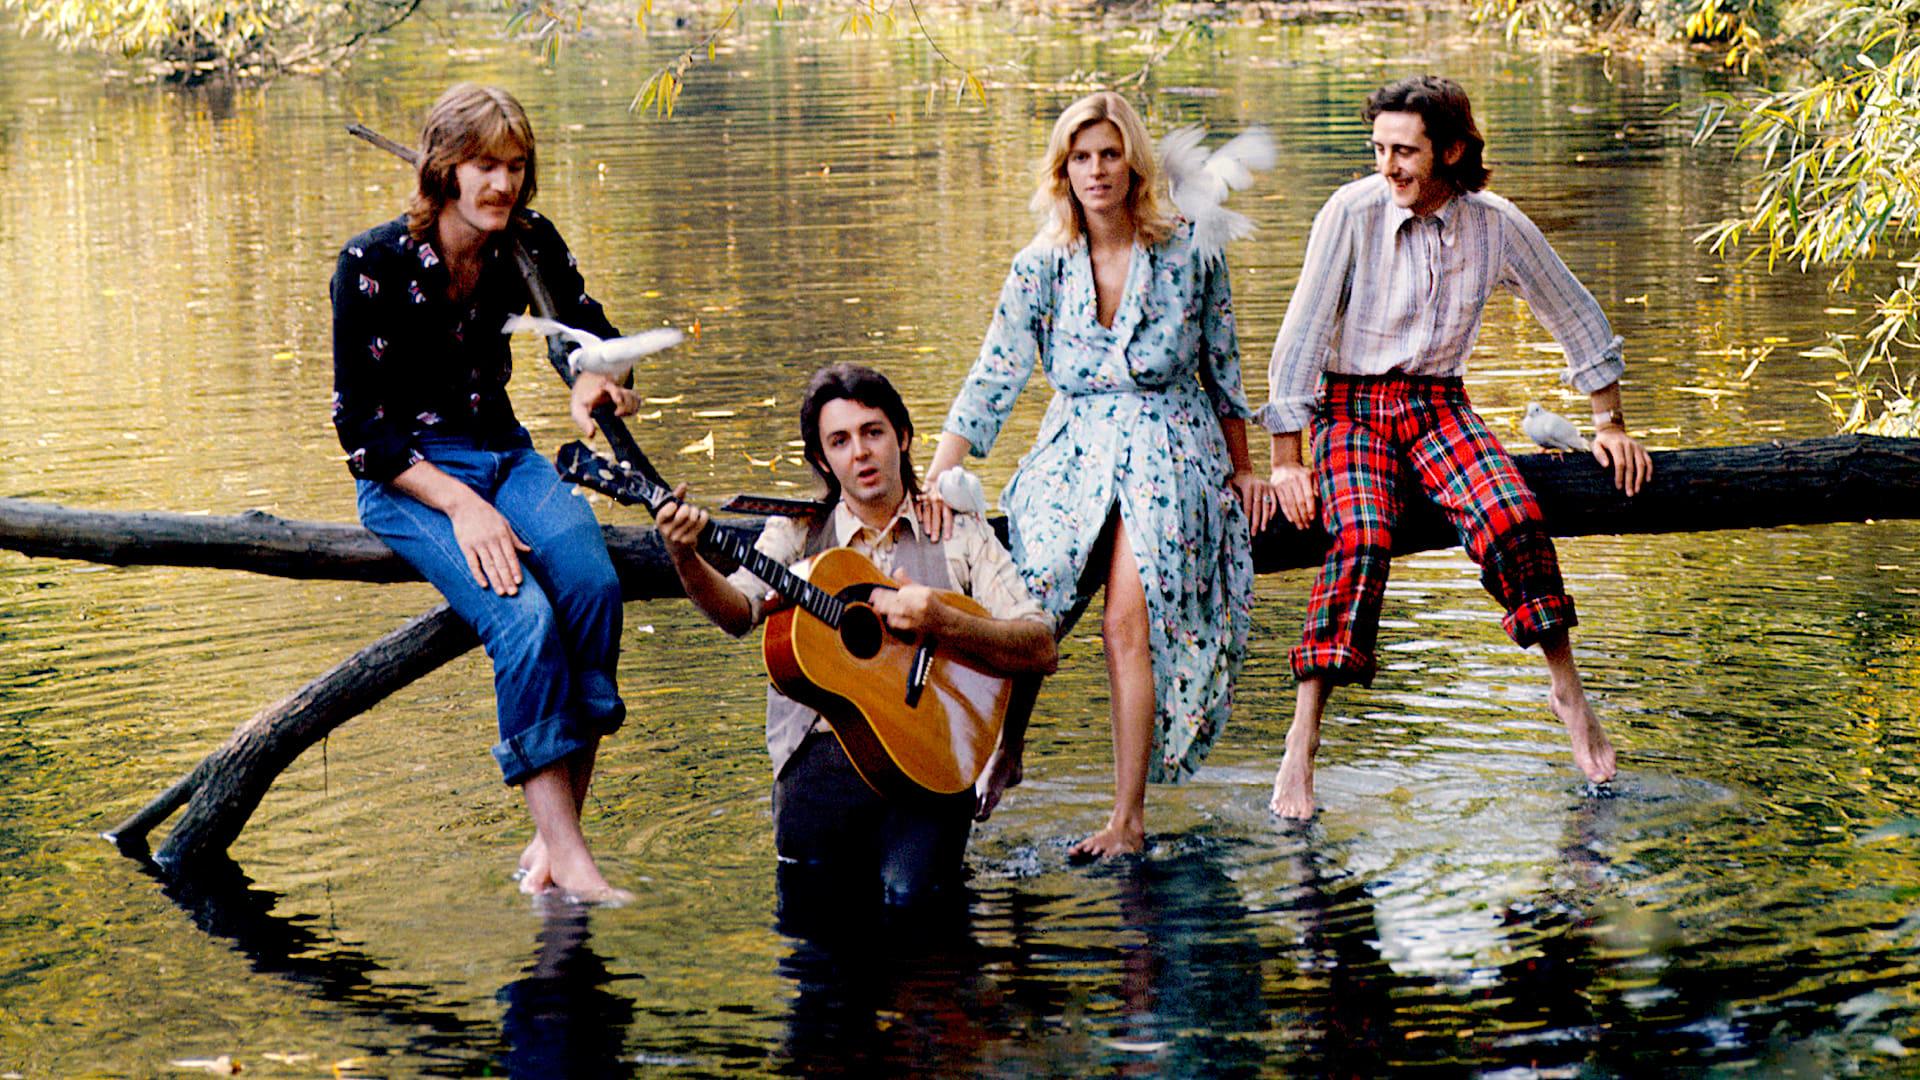 Paul McCartney & Wings: Wild Life backdrop